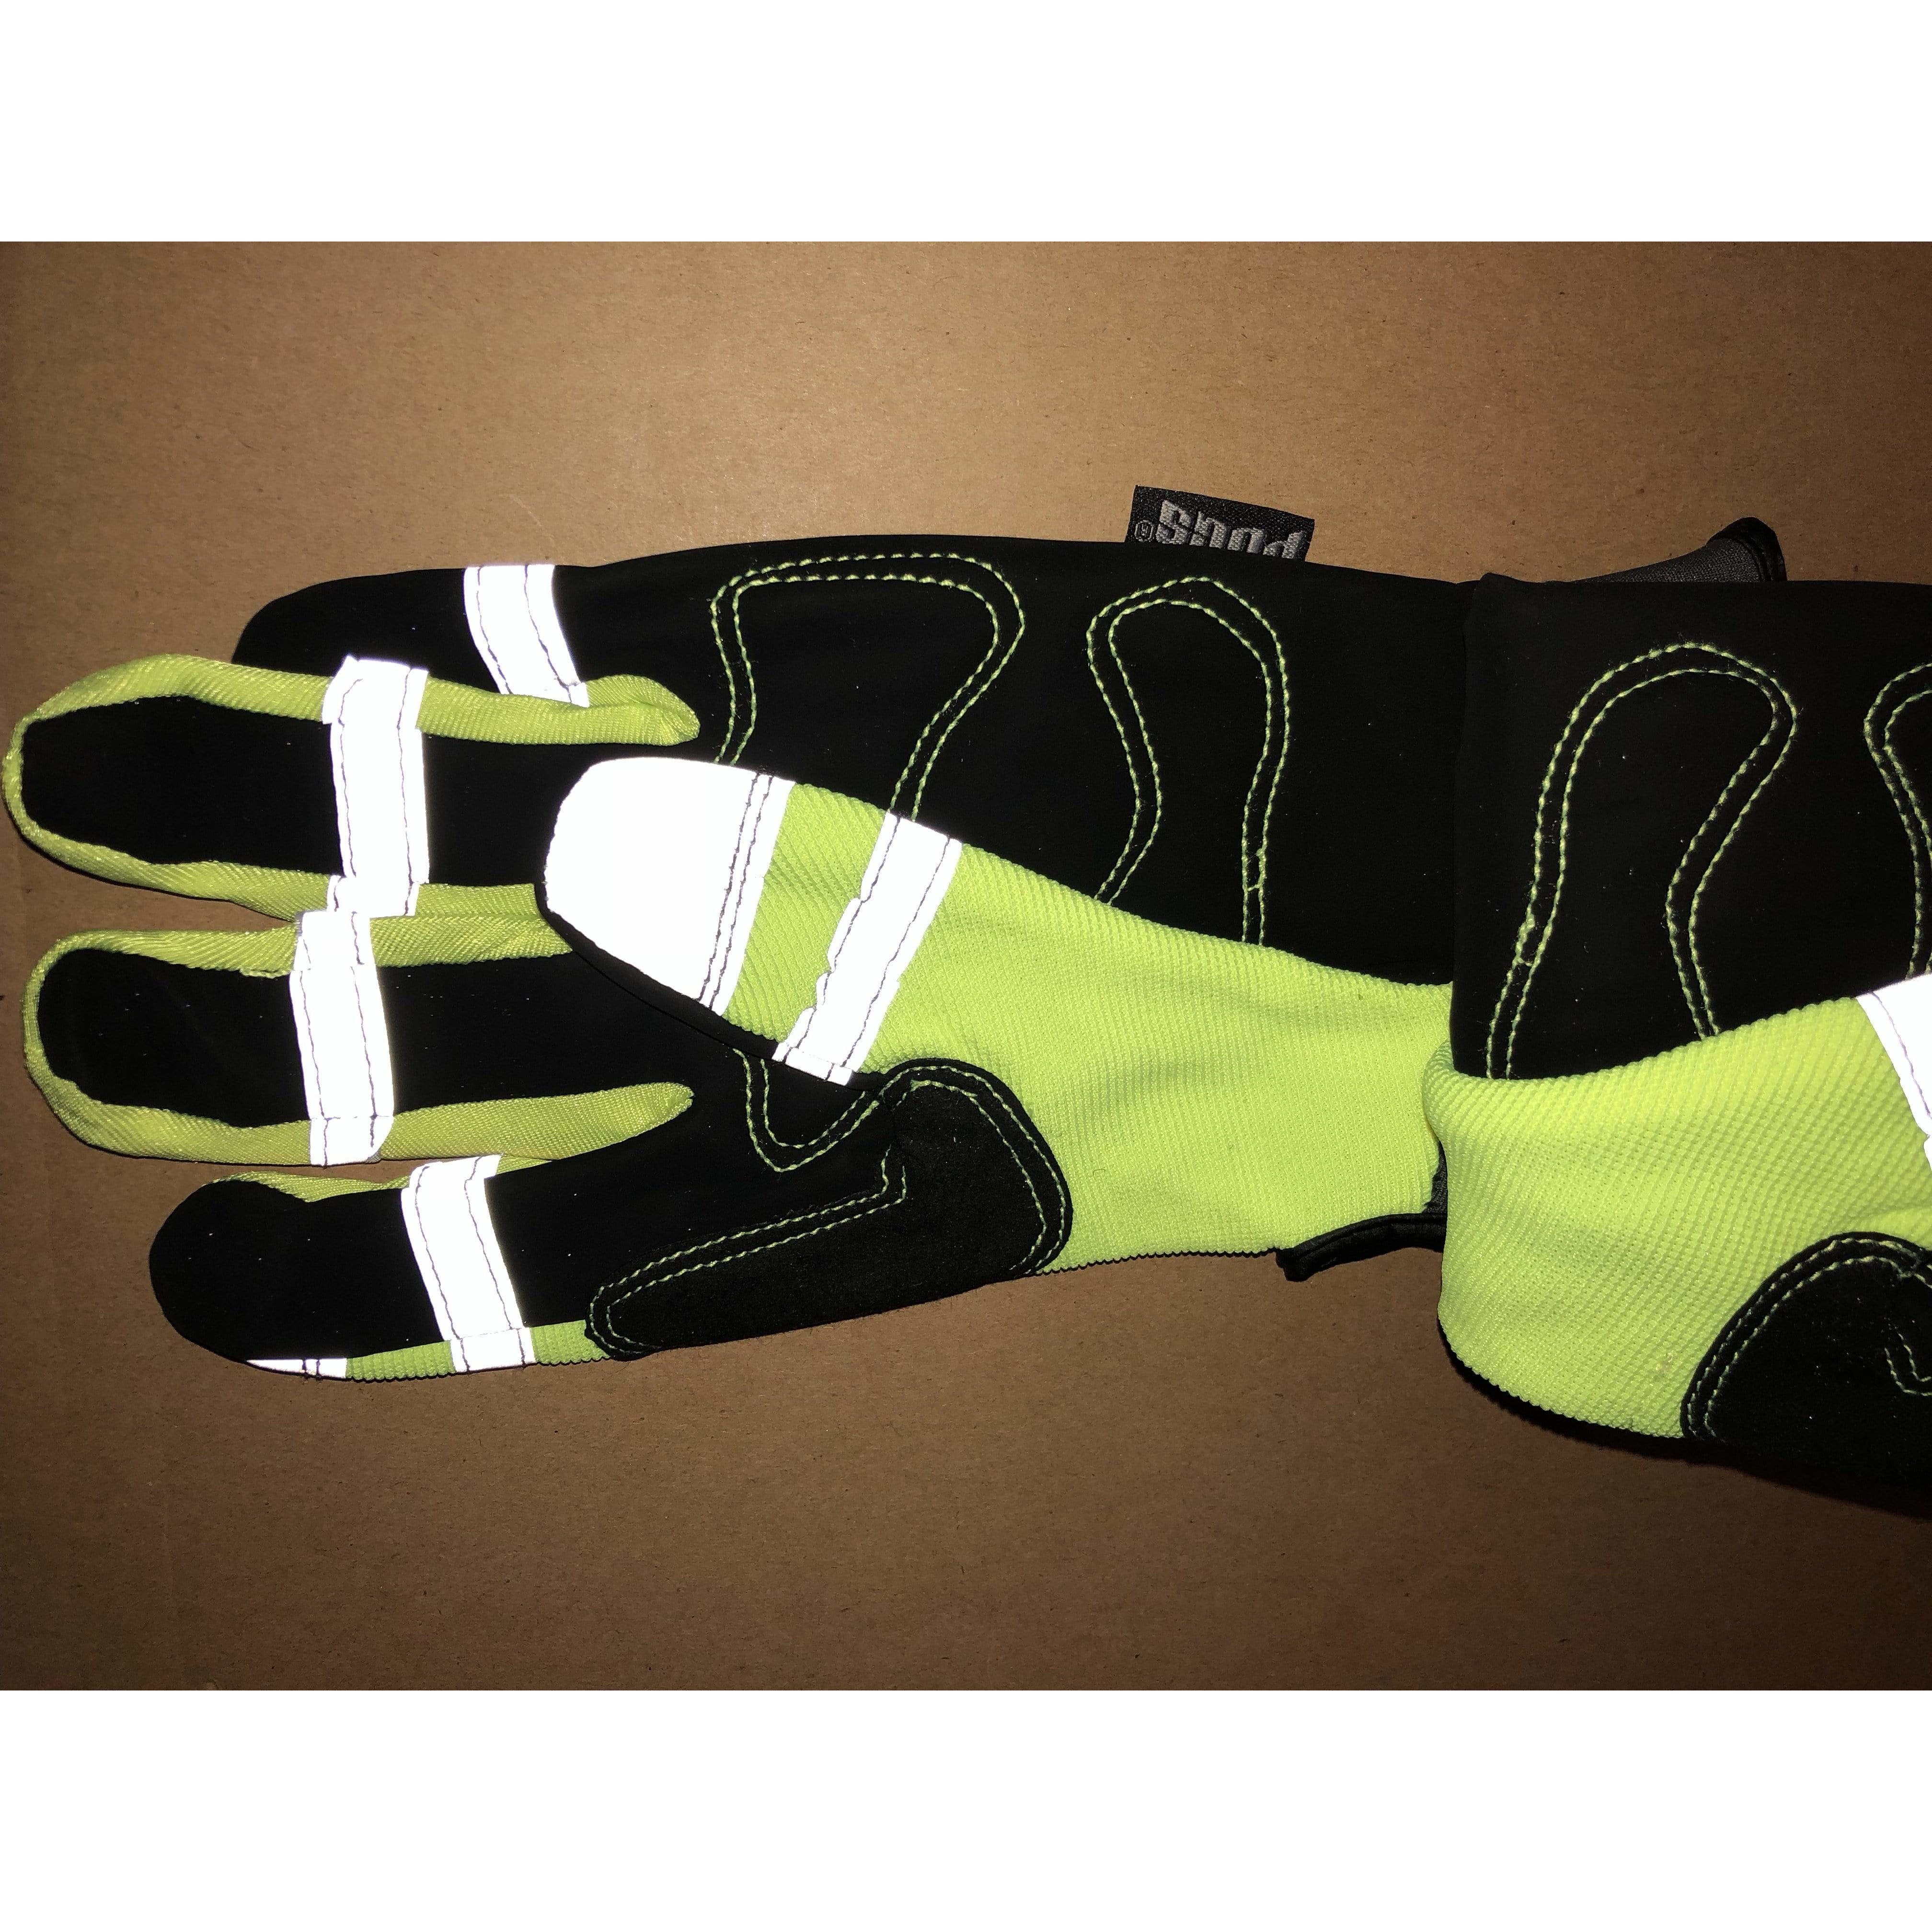 PUGS GLOVE Heavy Duty Work Gloves Safety Reflective Hi VIZ Size: LARGE L